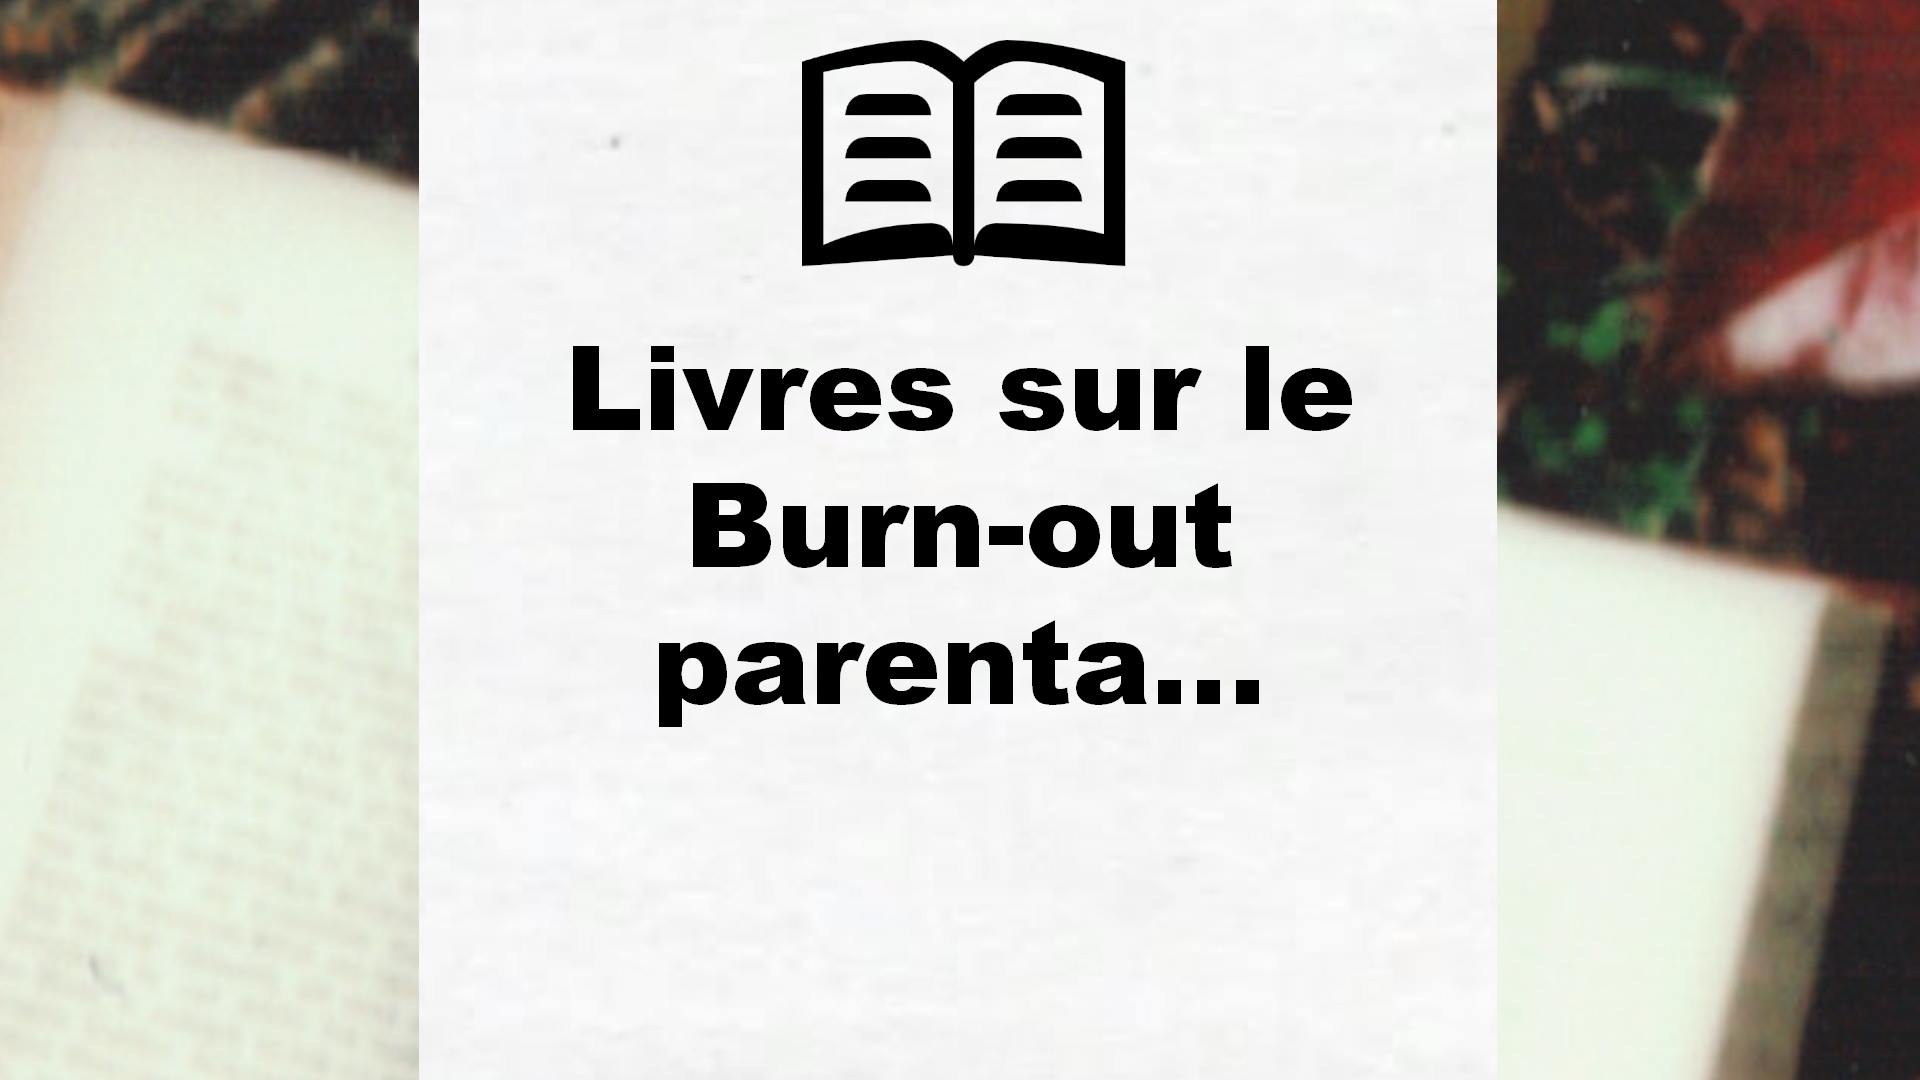 Livres sur le Burn-out parental